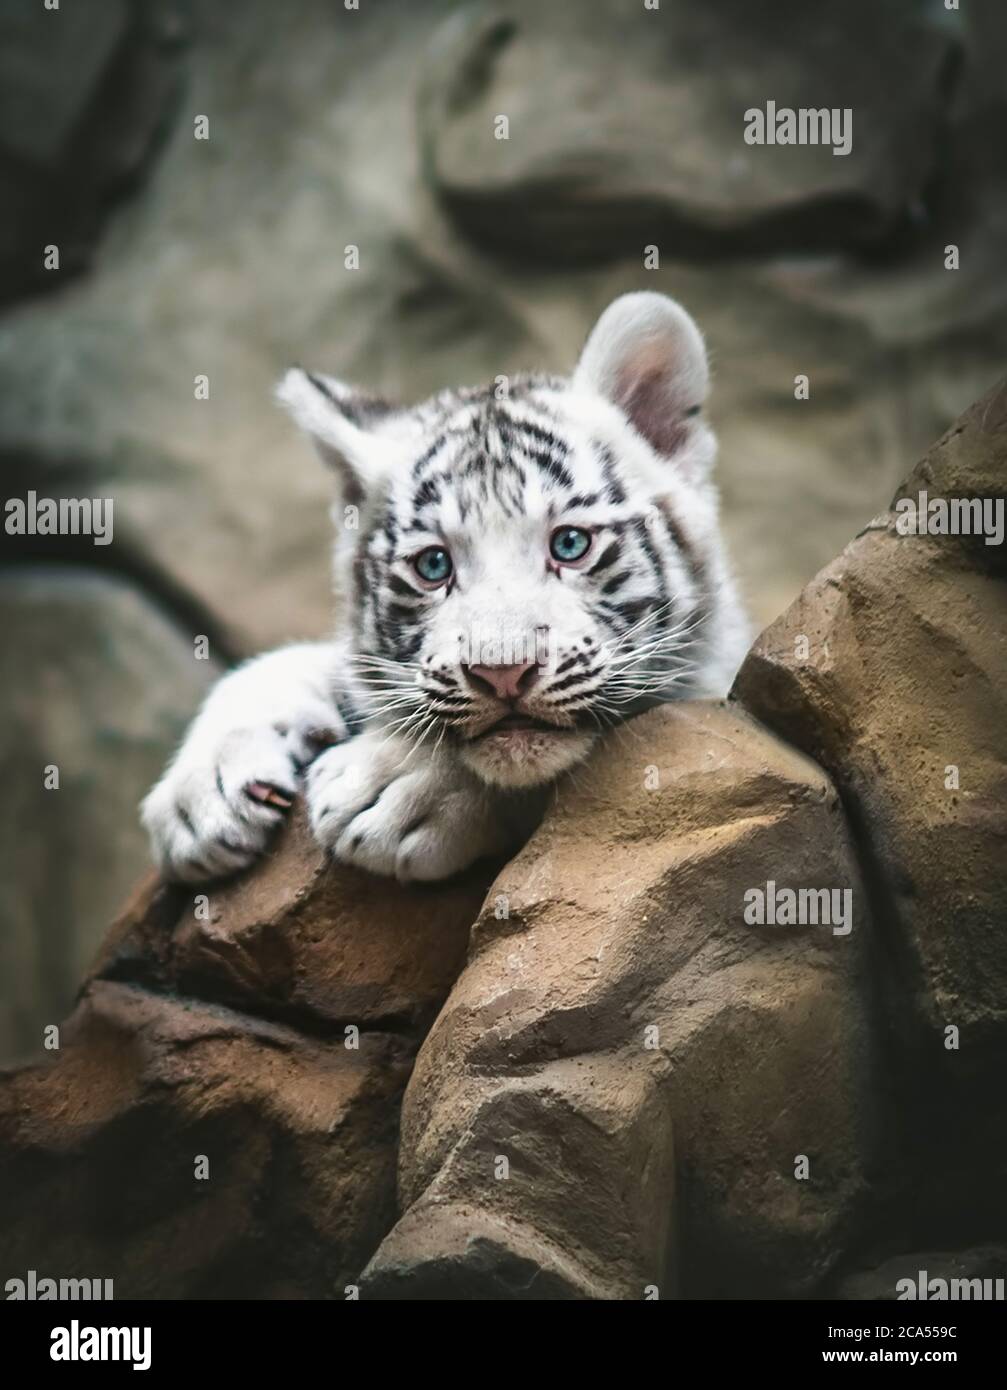 Tigre blanco descansando lado a lado. El tigre blanco o tigre blanqueado es una variante pigmentación del tigre de Bengala, animales jóvenes, blanco y negro, Zoo Lib Foto de stock